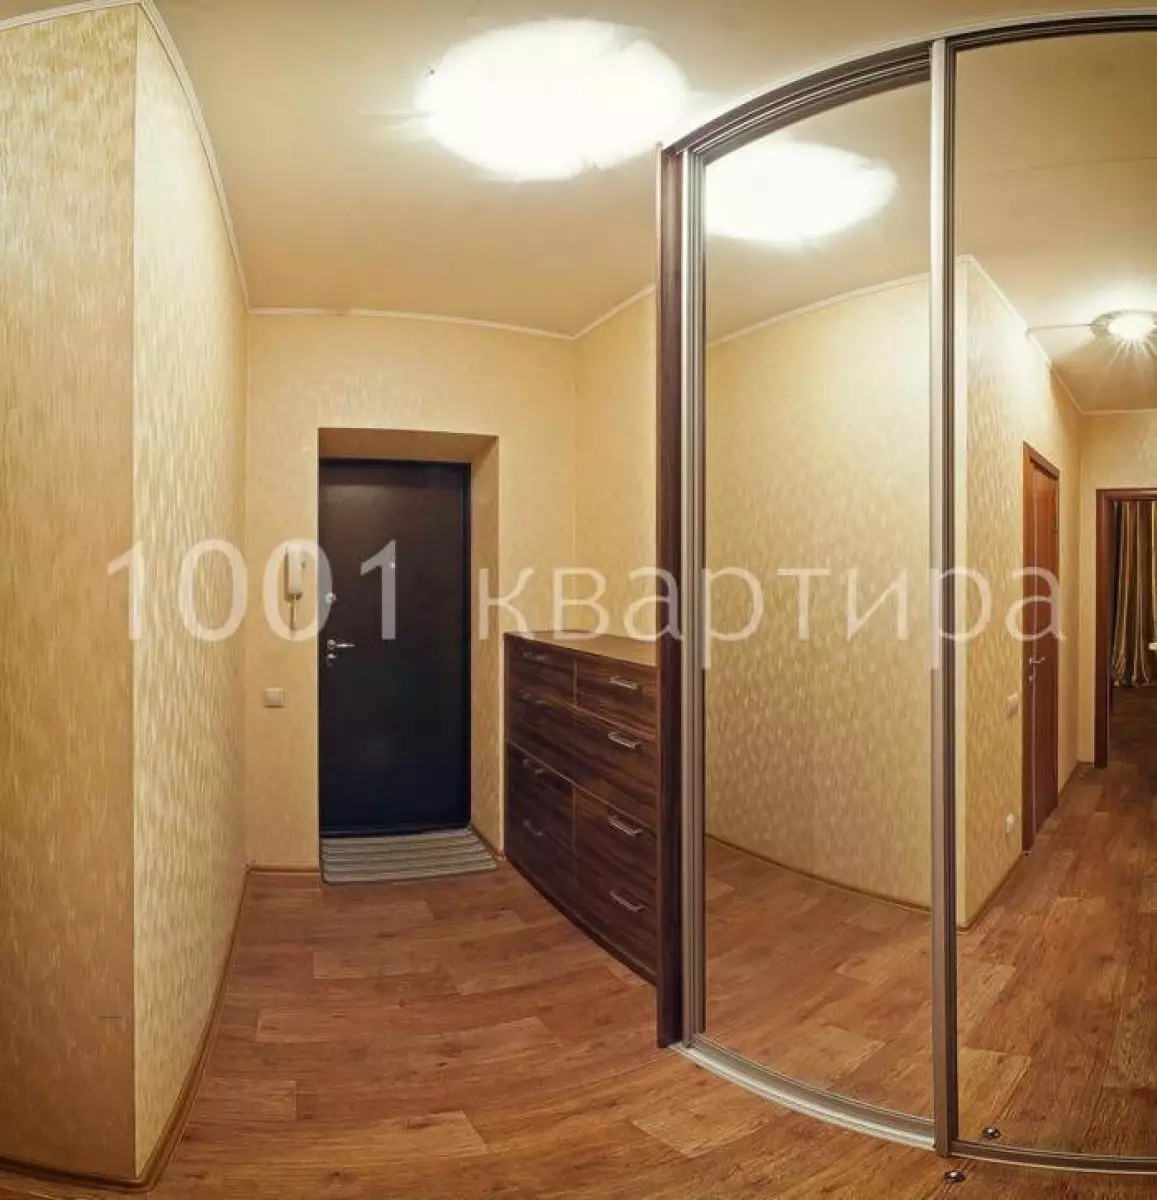 Вариант #126917 для аренды посуточно в Новосибирске Геодезическая, д.5/1 на 4 гостей - фото 5